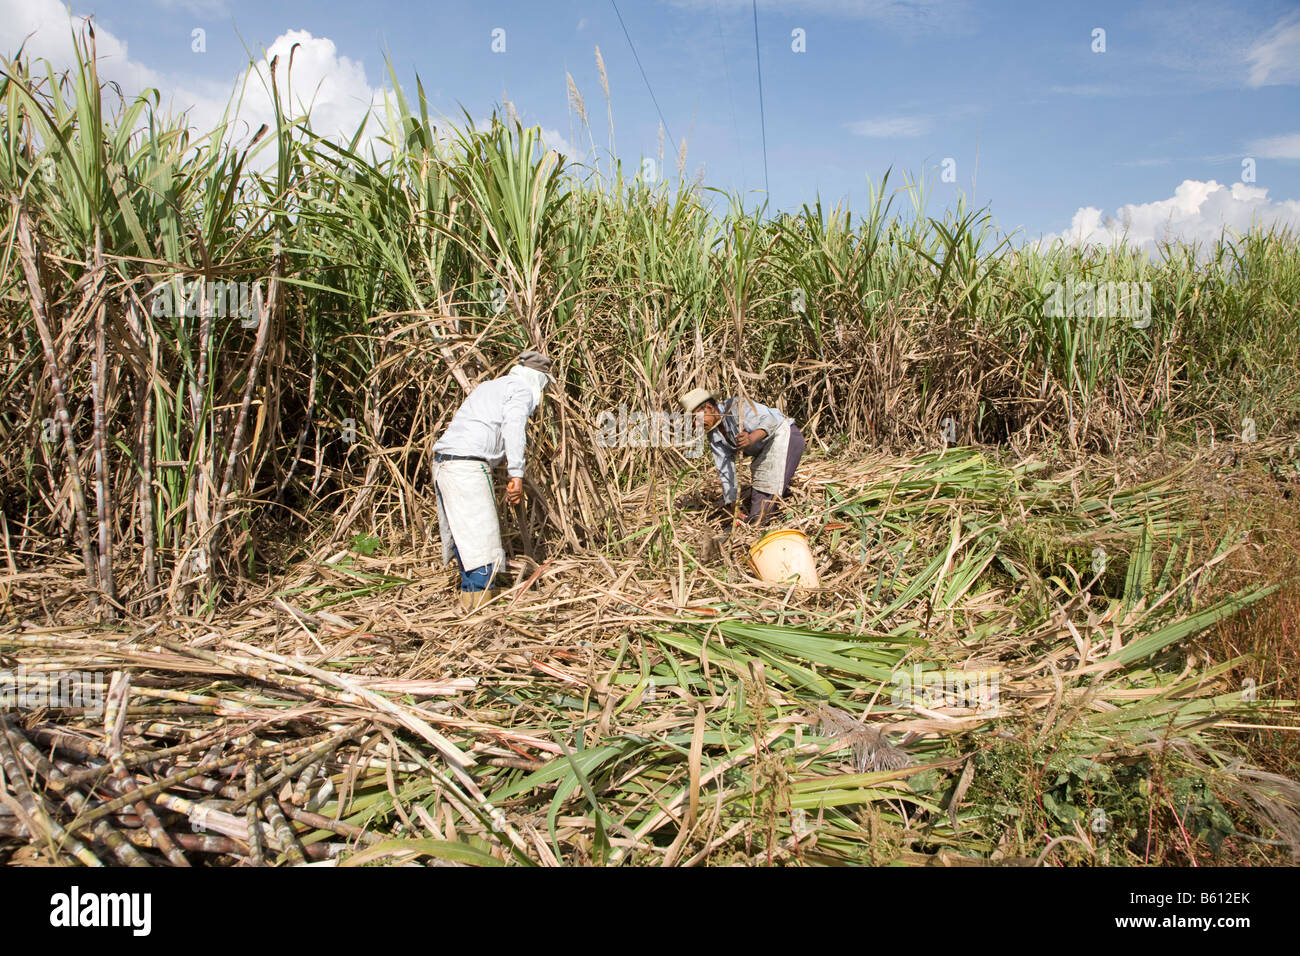 La canne à sucre, la canne coupe hommes avec une machette, le Venezuela, l'Amérique du Sud Banque D'Images